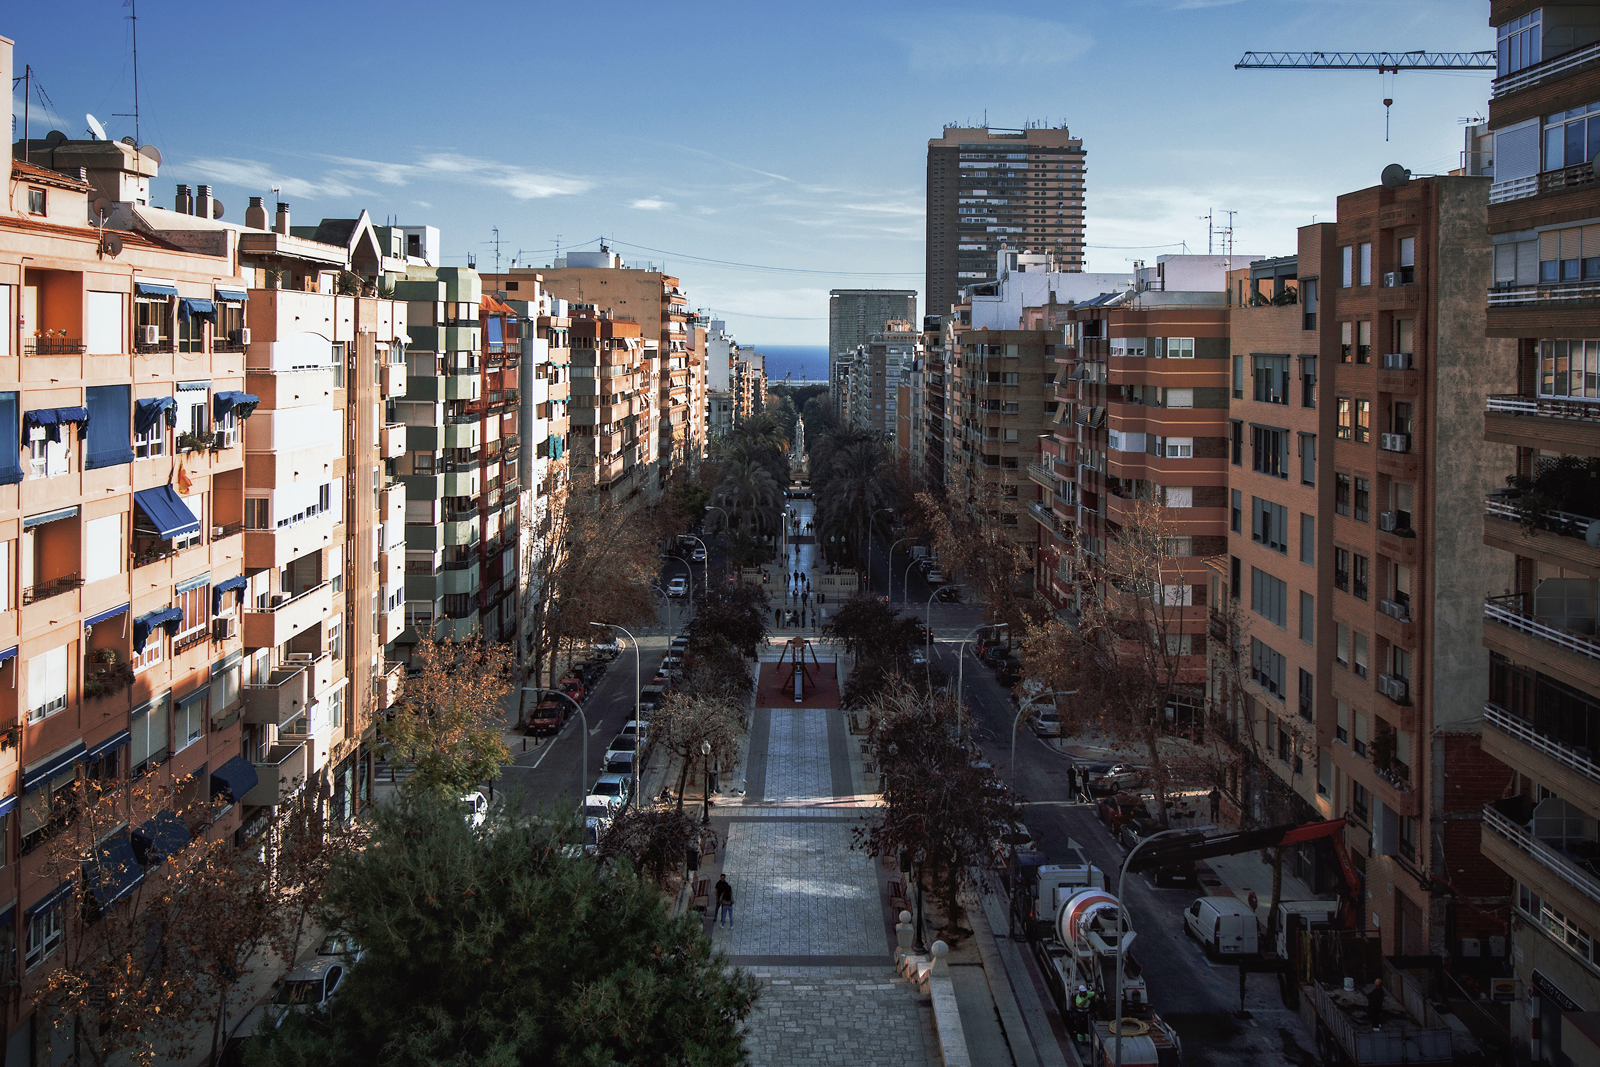 Una vista aérea del Bulevar Federico Soto. Lugar de tiendas y comercios, chicos y grandes. Al sur, antes de llegar al mar, está la Avenida Masonnave, lugar de dos de los tres Corte Inglés de Alicante.